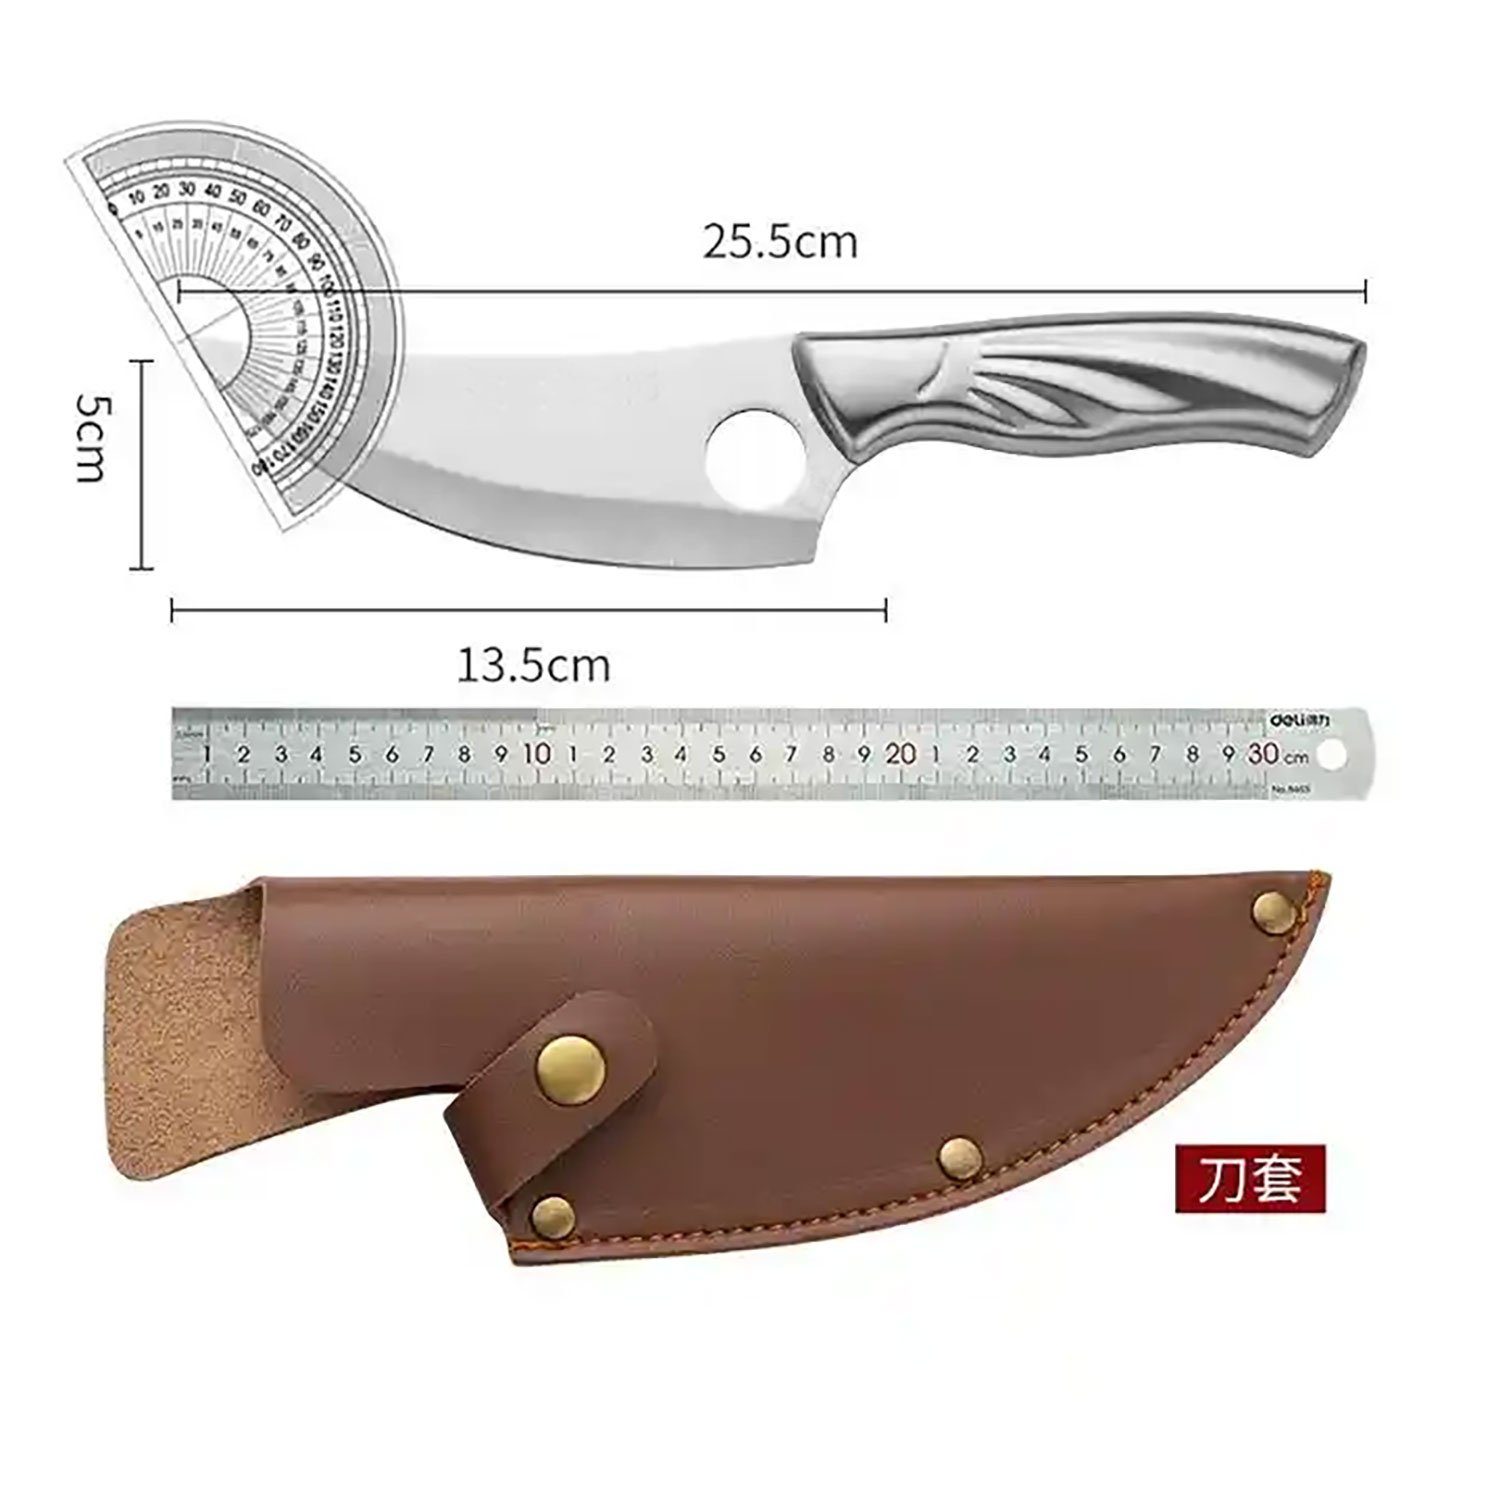 Muxel Hackmesser Multifunktionales Küchenmesser Outdoormesser Kompakt, - und handlich scharf